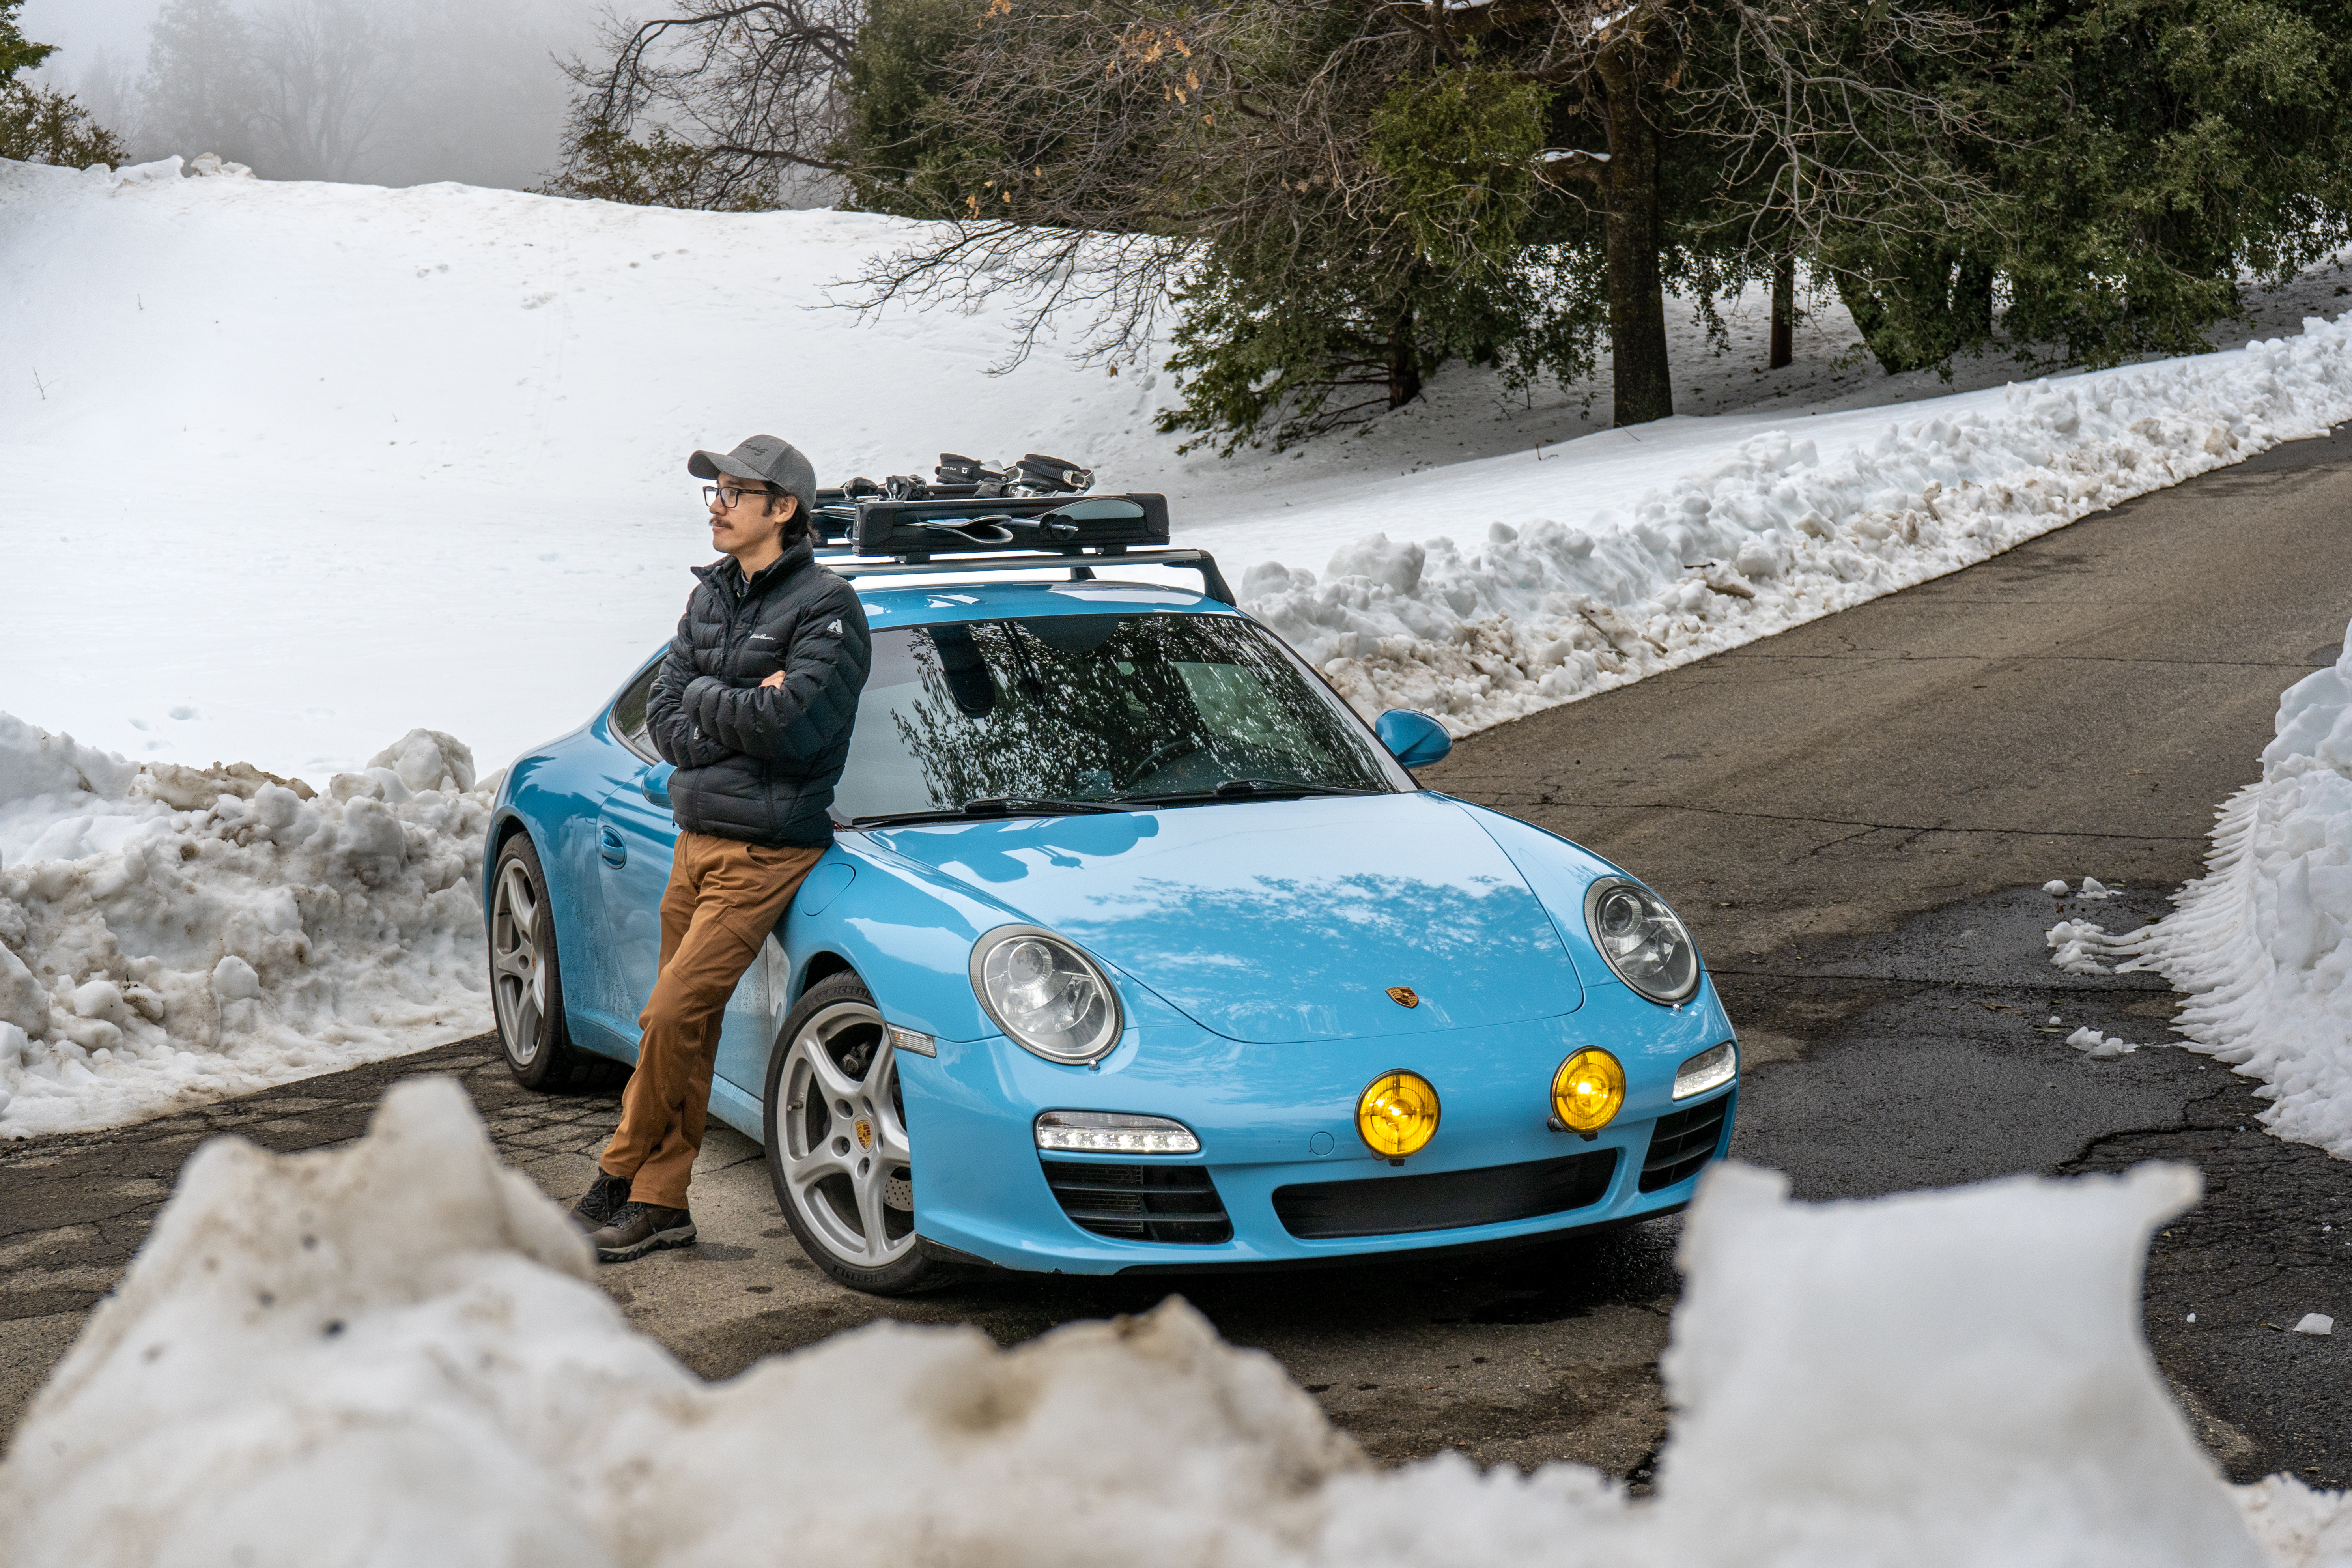 Man stands next to Porsche 911 (type 997) amid snowy scene